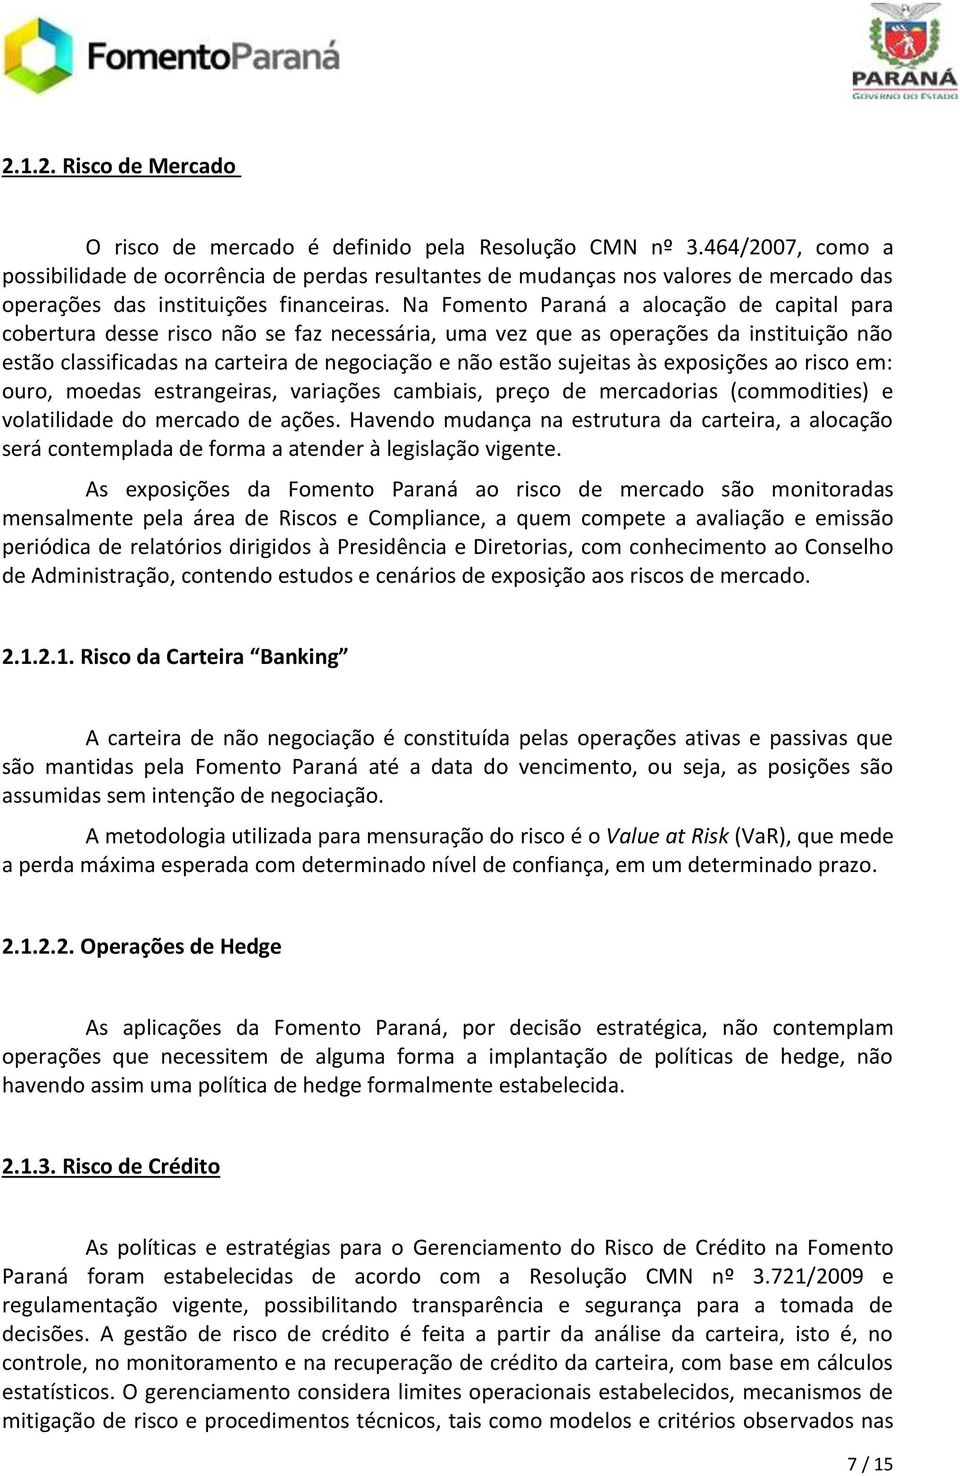 Na Fomento Paraná a alocação de capital para cobertura desse risco não se faz necessária, uma vez que as operações da instituição não estão classificadas na carteira de negociação e não estão